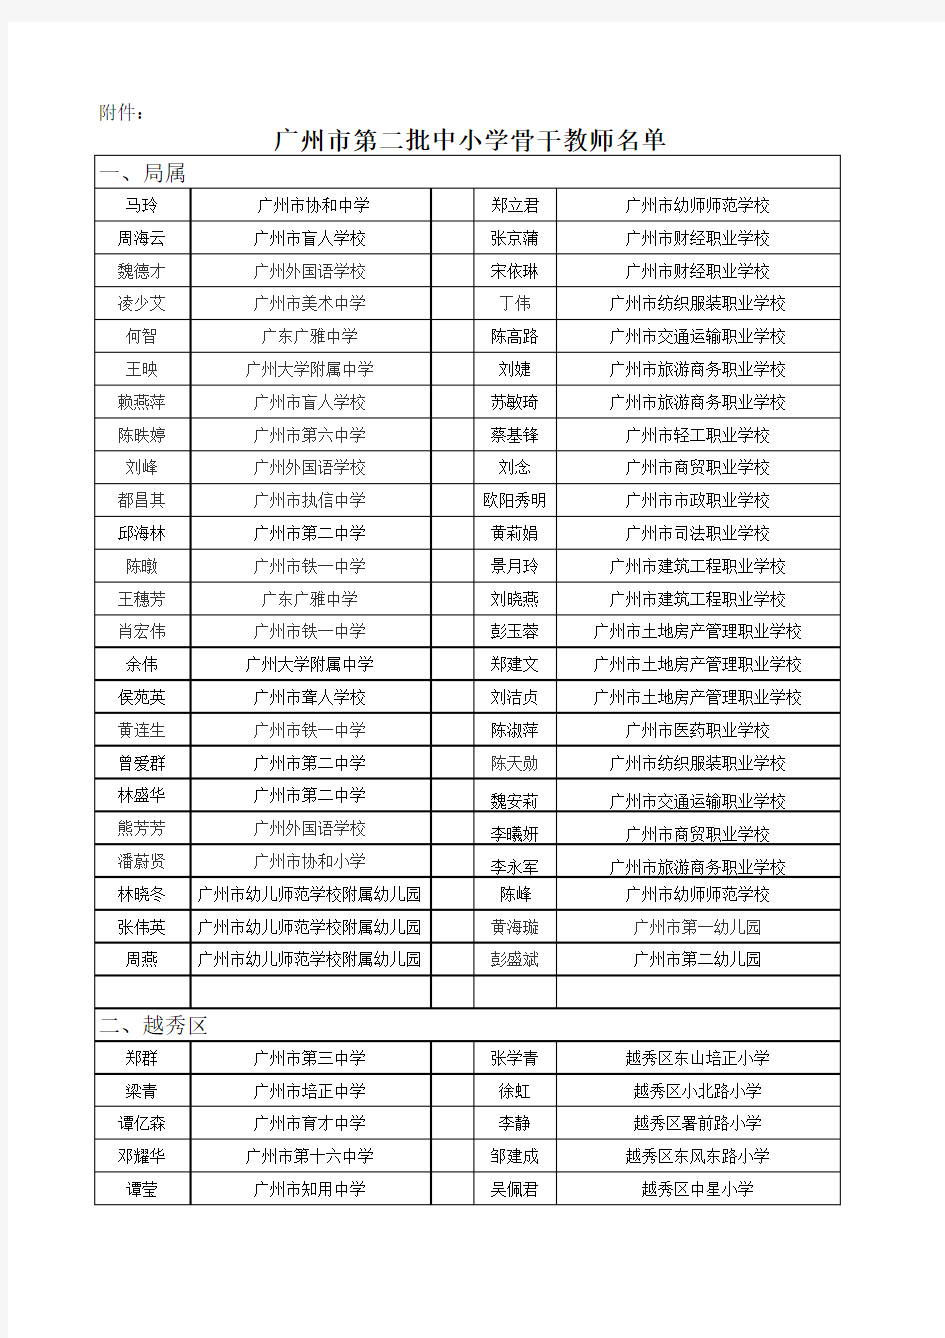 广州市第二批中小学骨干教师名单